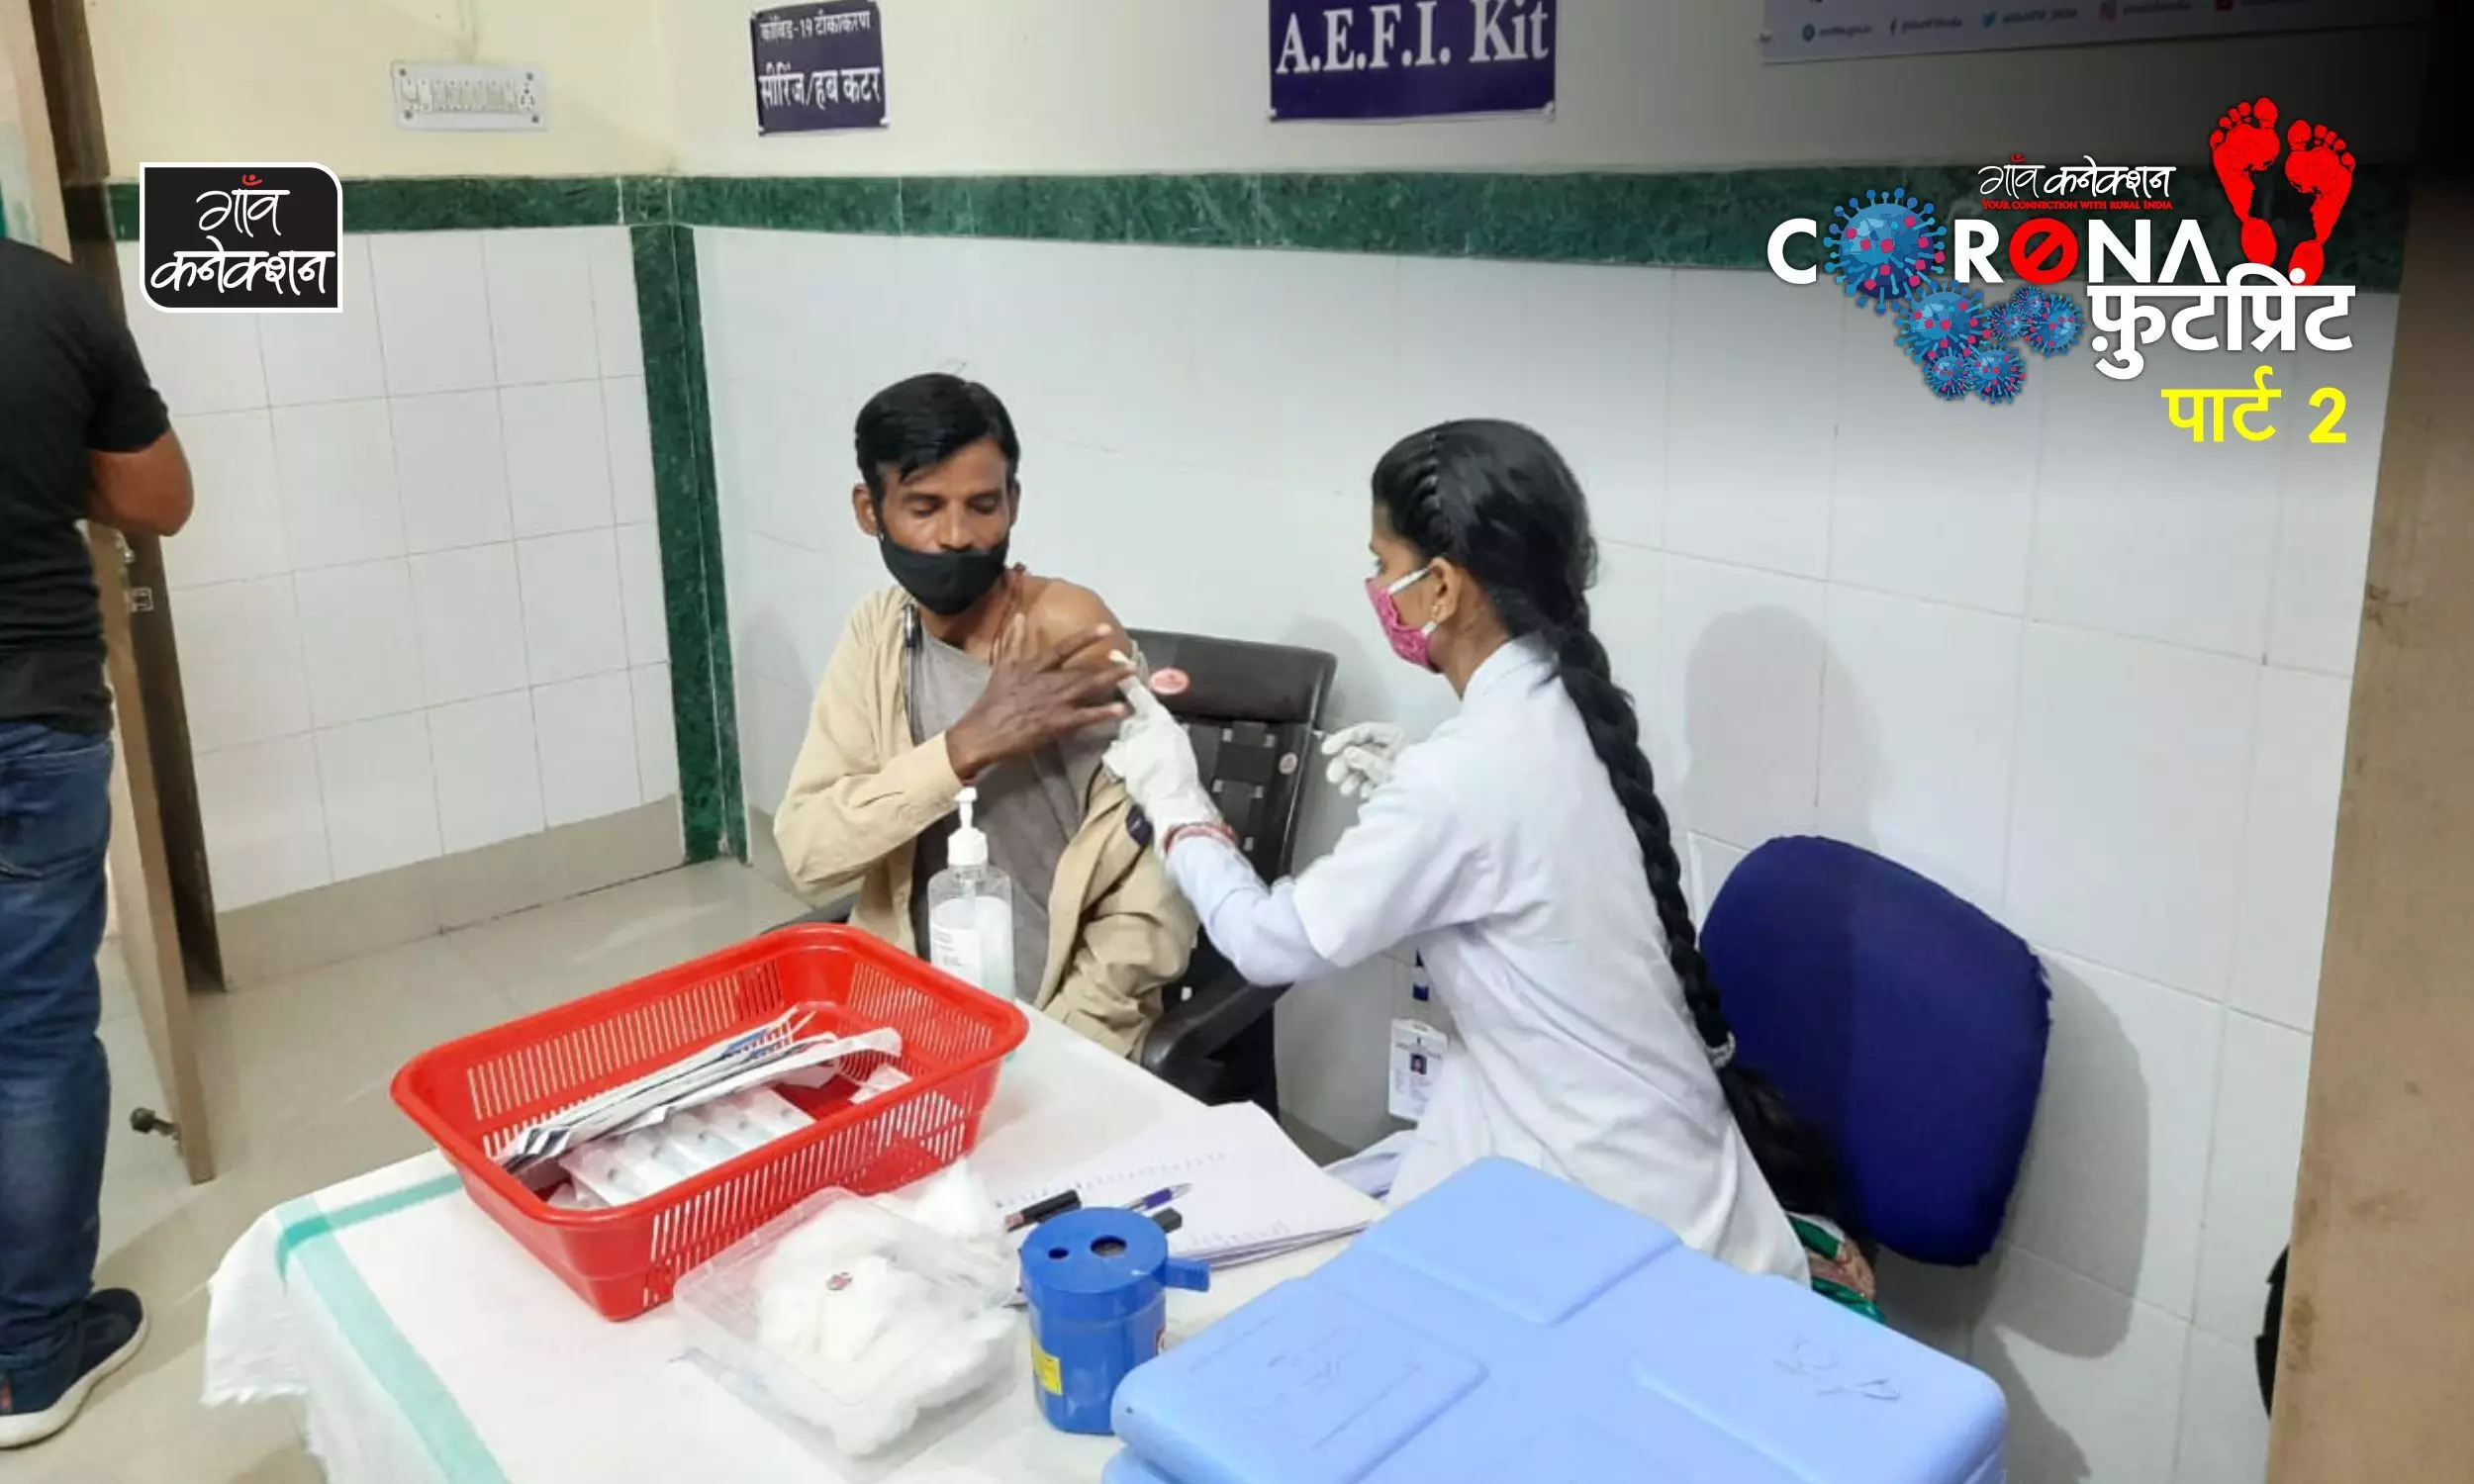 कोविड टीकाकरण: राजस्थान में गांवों में कैंप लगाए जाने से टीकाकरण मुहिम पर क्या असर पड़ा है?